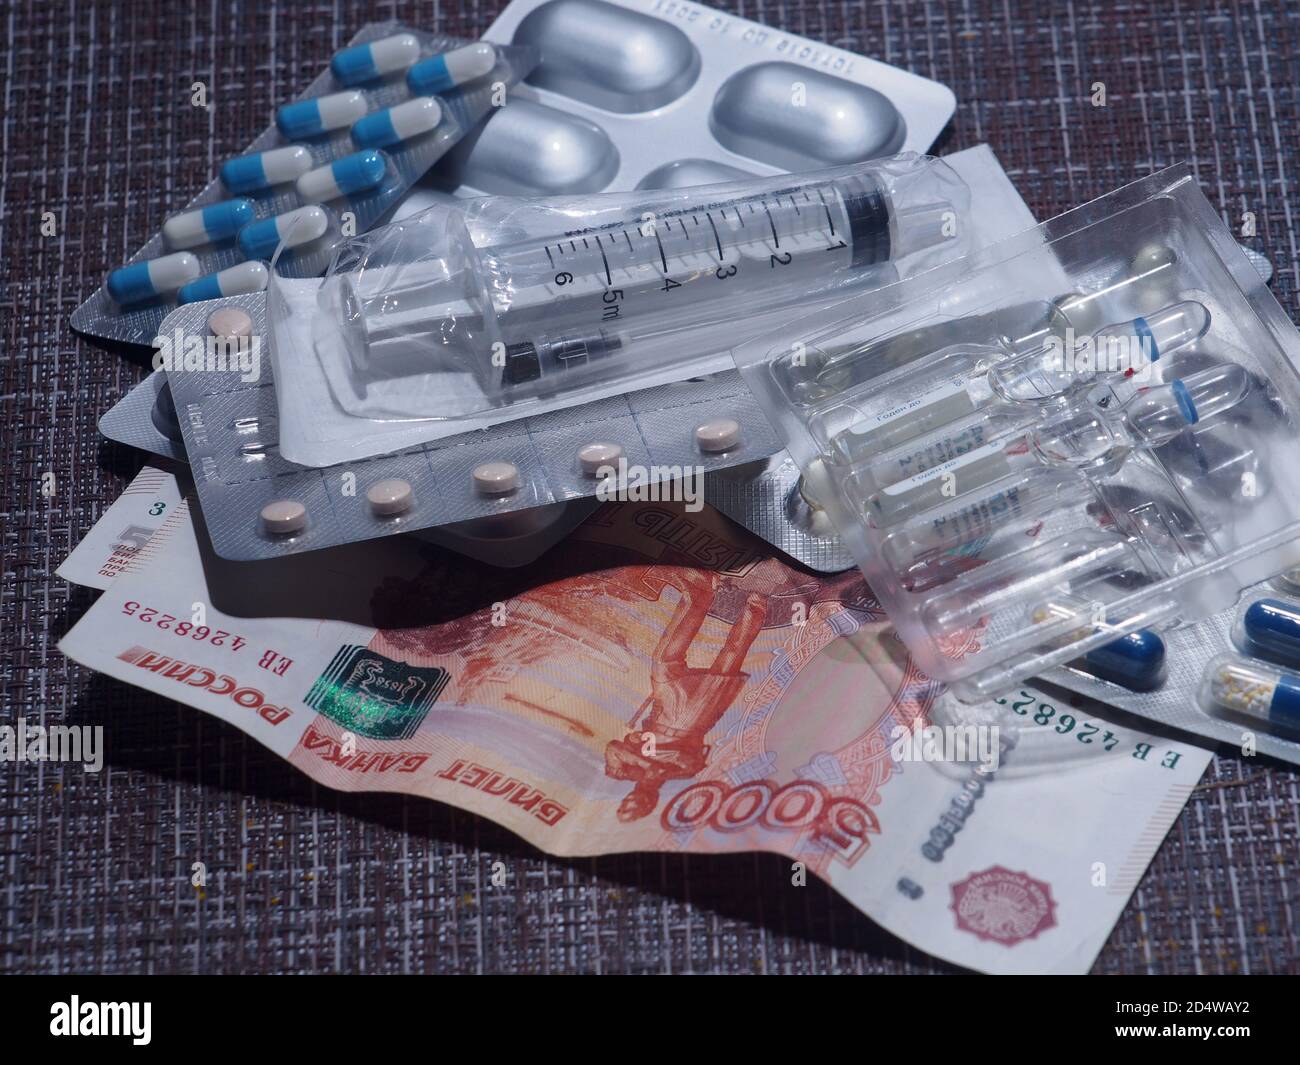 Sur la table se trouvent des pilules, des capsules et des ampoules avec des médicaments, une seringue et des rubles russes. Gros plan. Banque D'Images